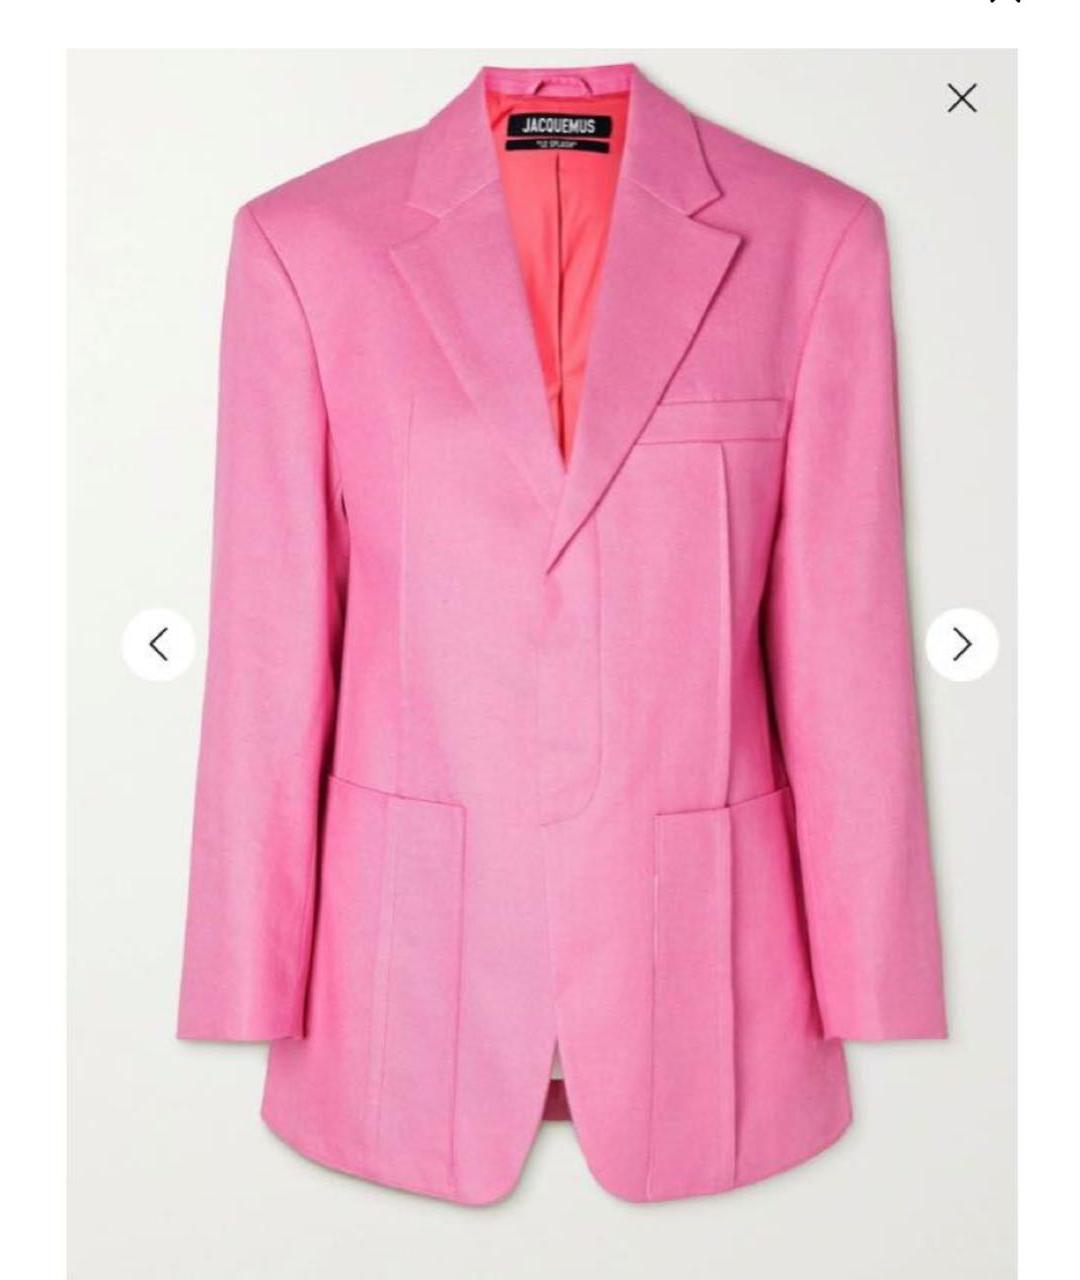 JACQUEMUS Розовый льняной жакет/пиджак, фото 2